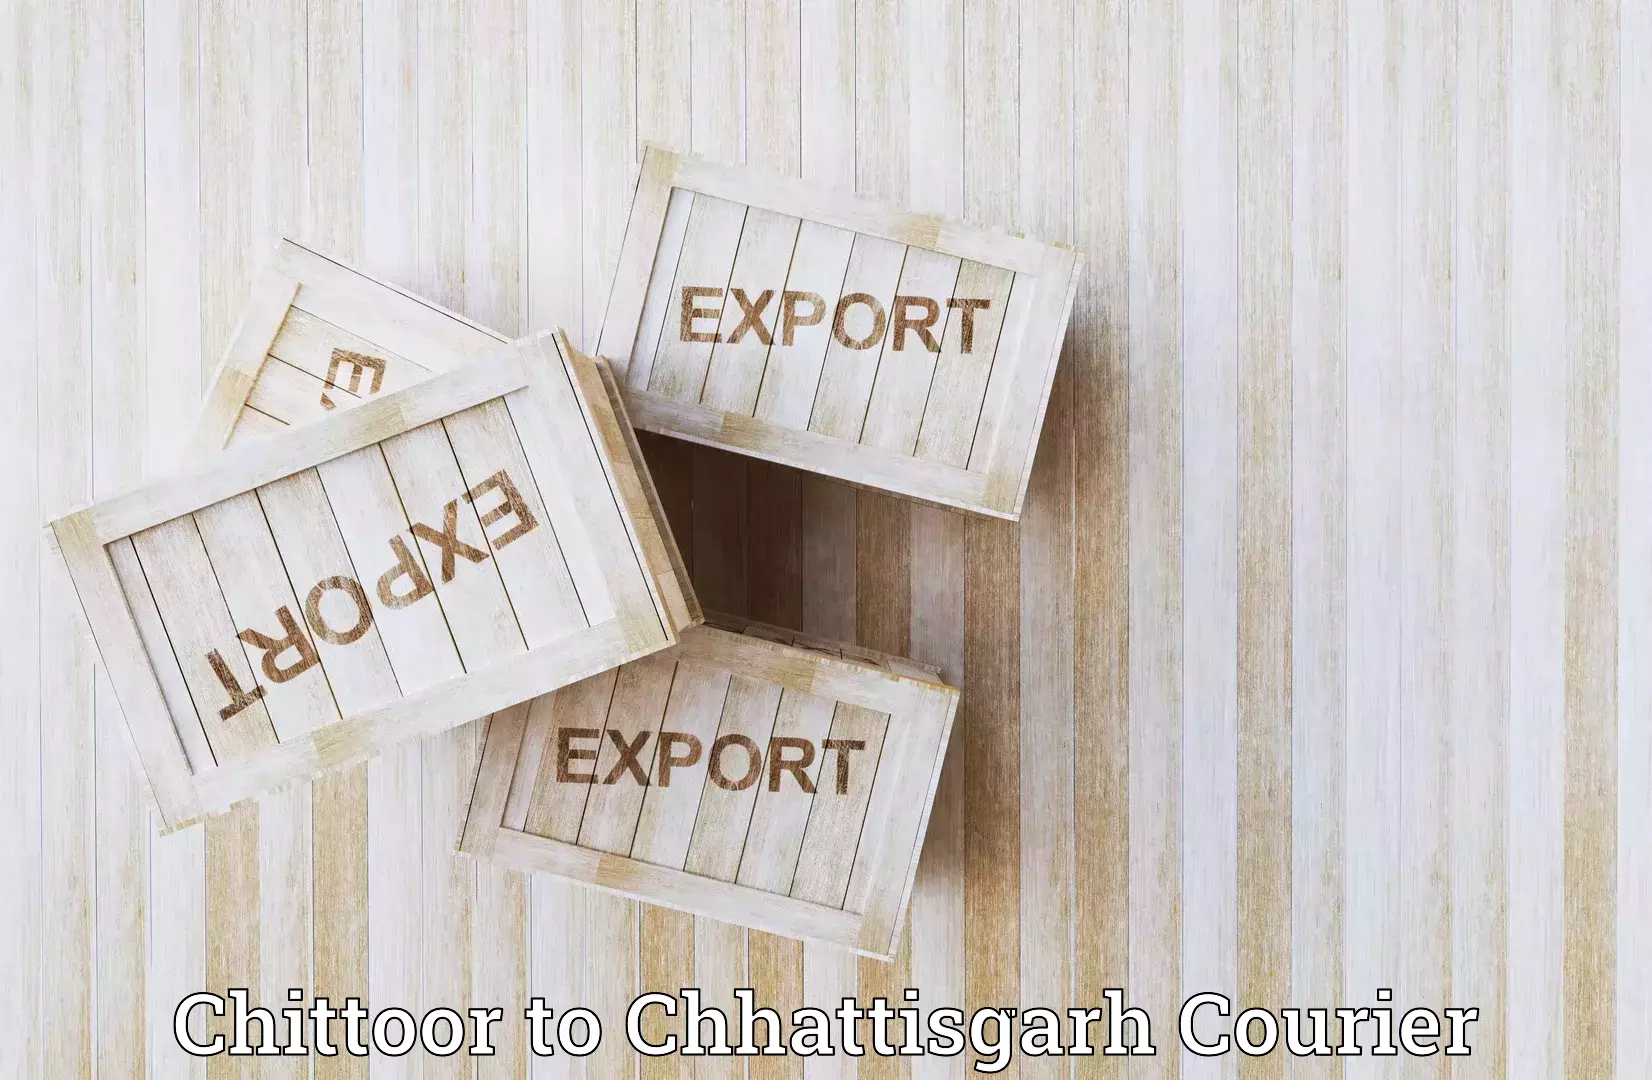 Efficient cargo services Chittoor to Khairagarh